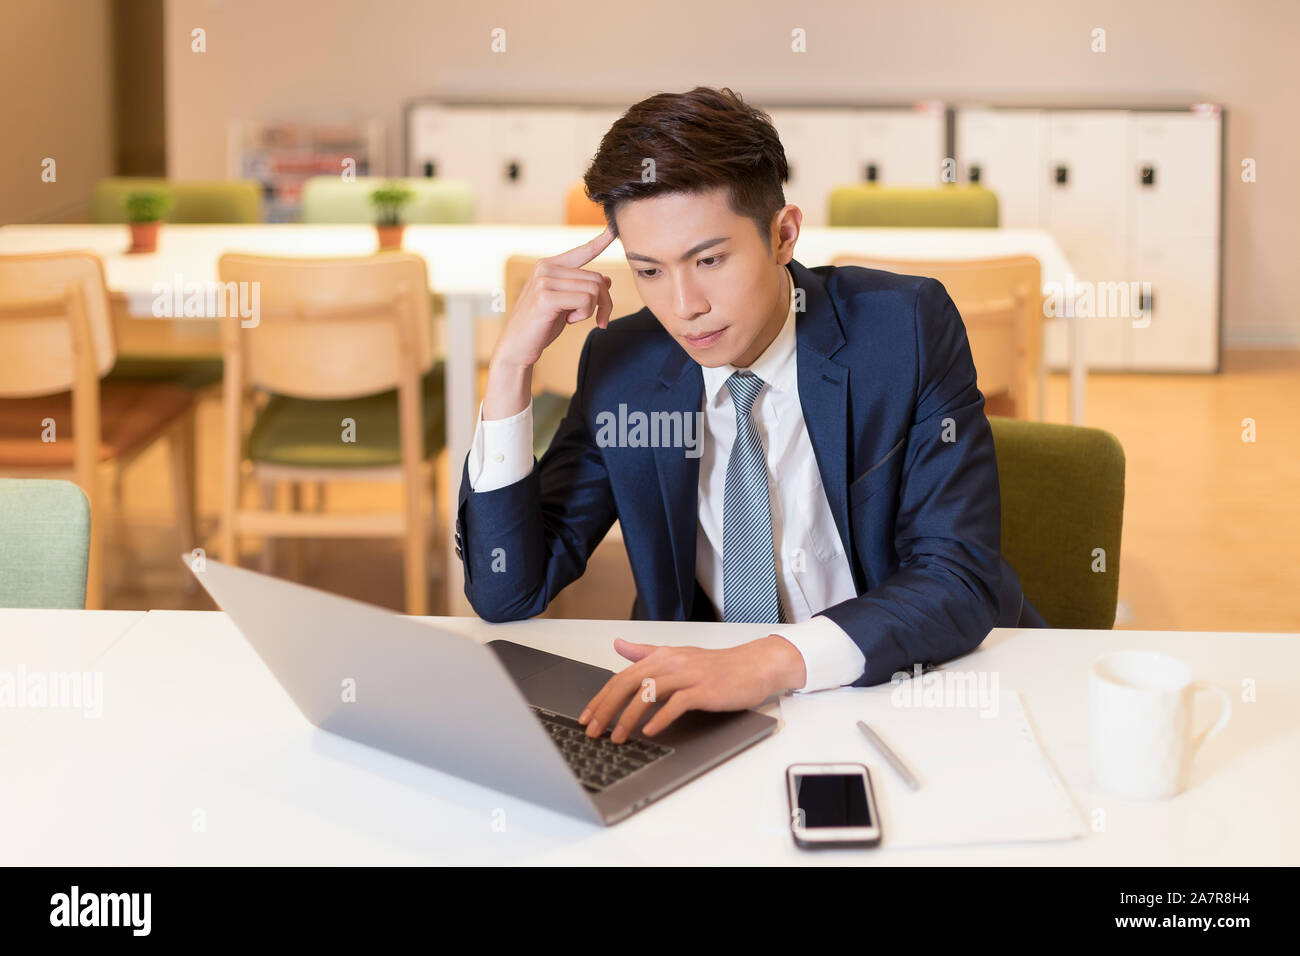 Cintura para arriba la foto de un joven empresario con pelo negro y un traje sentado concentrado en trabajar en la parte frontal del portátil en el escritorio en una oficina. Foto de stock